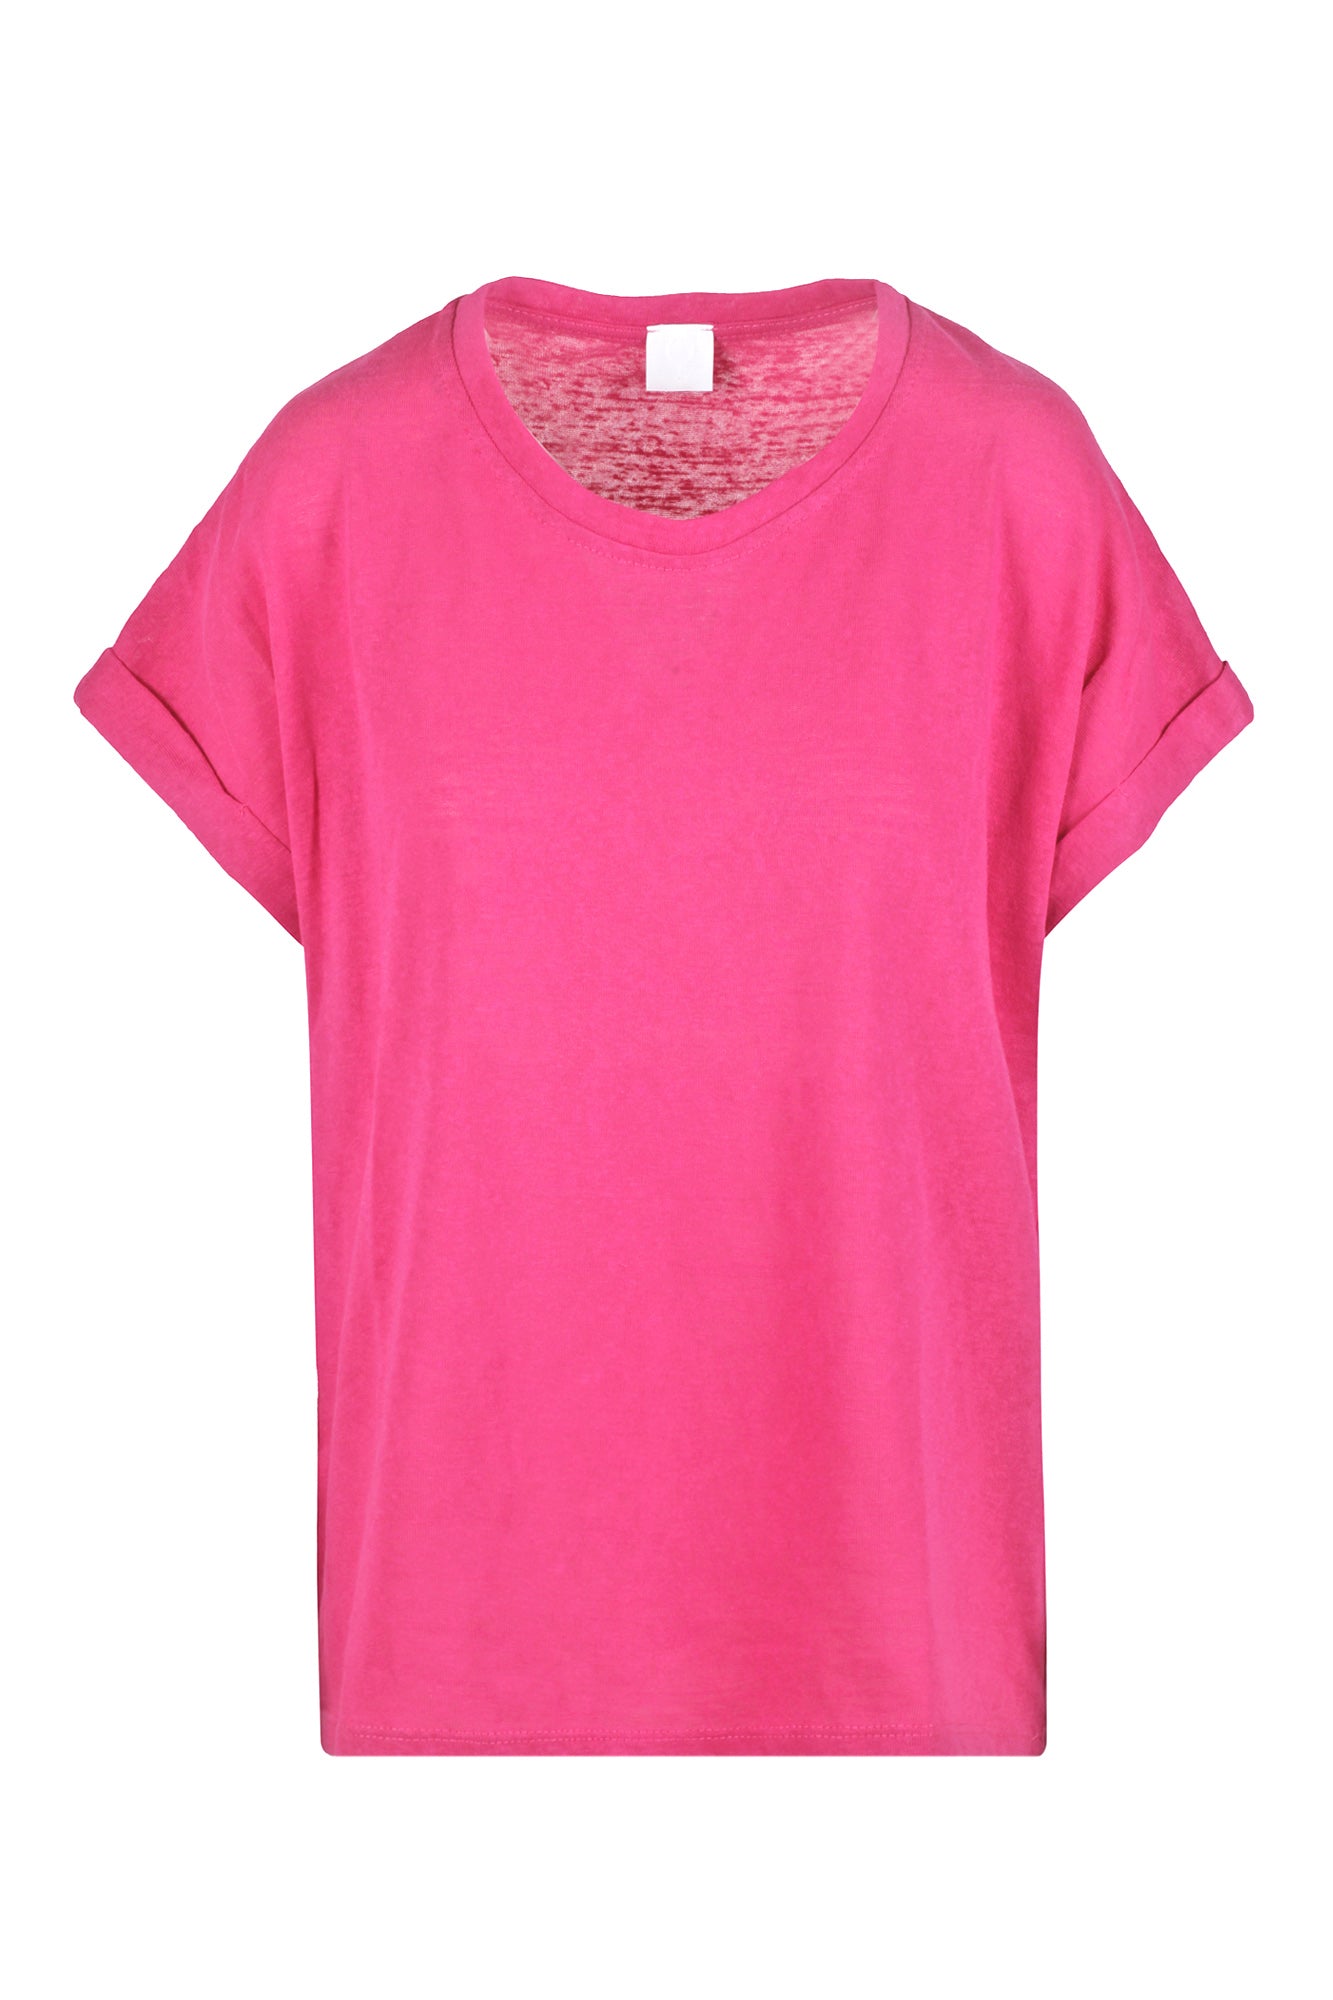 La Femme Blanche - T-shirt - 431585 - Fuxia